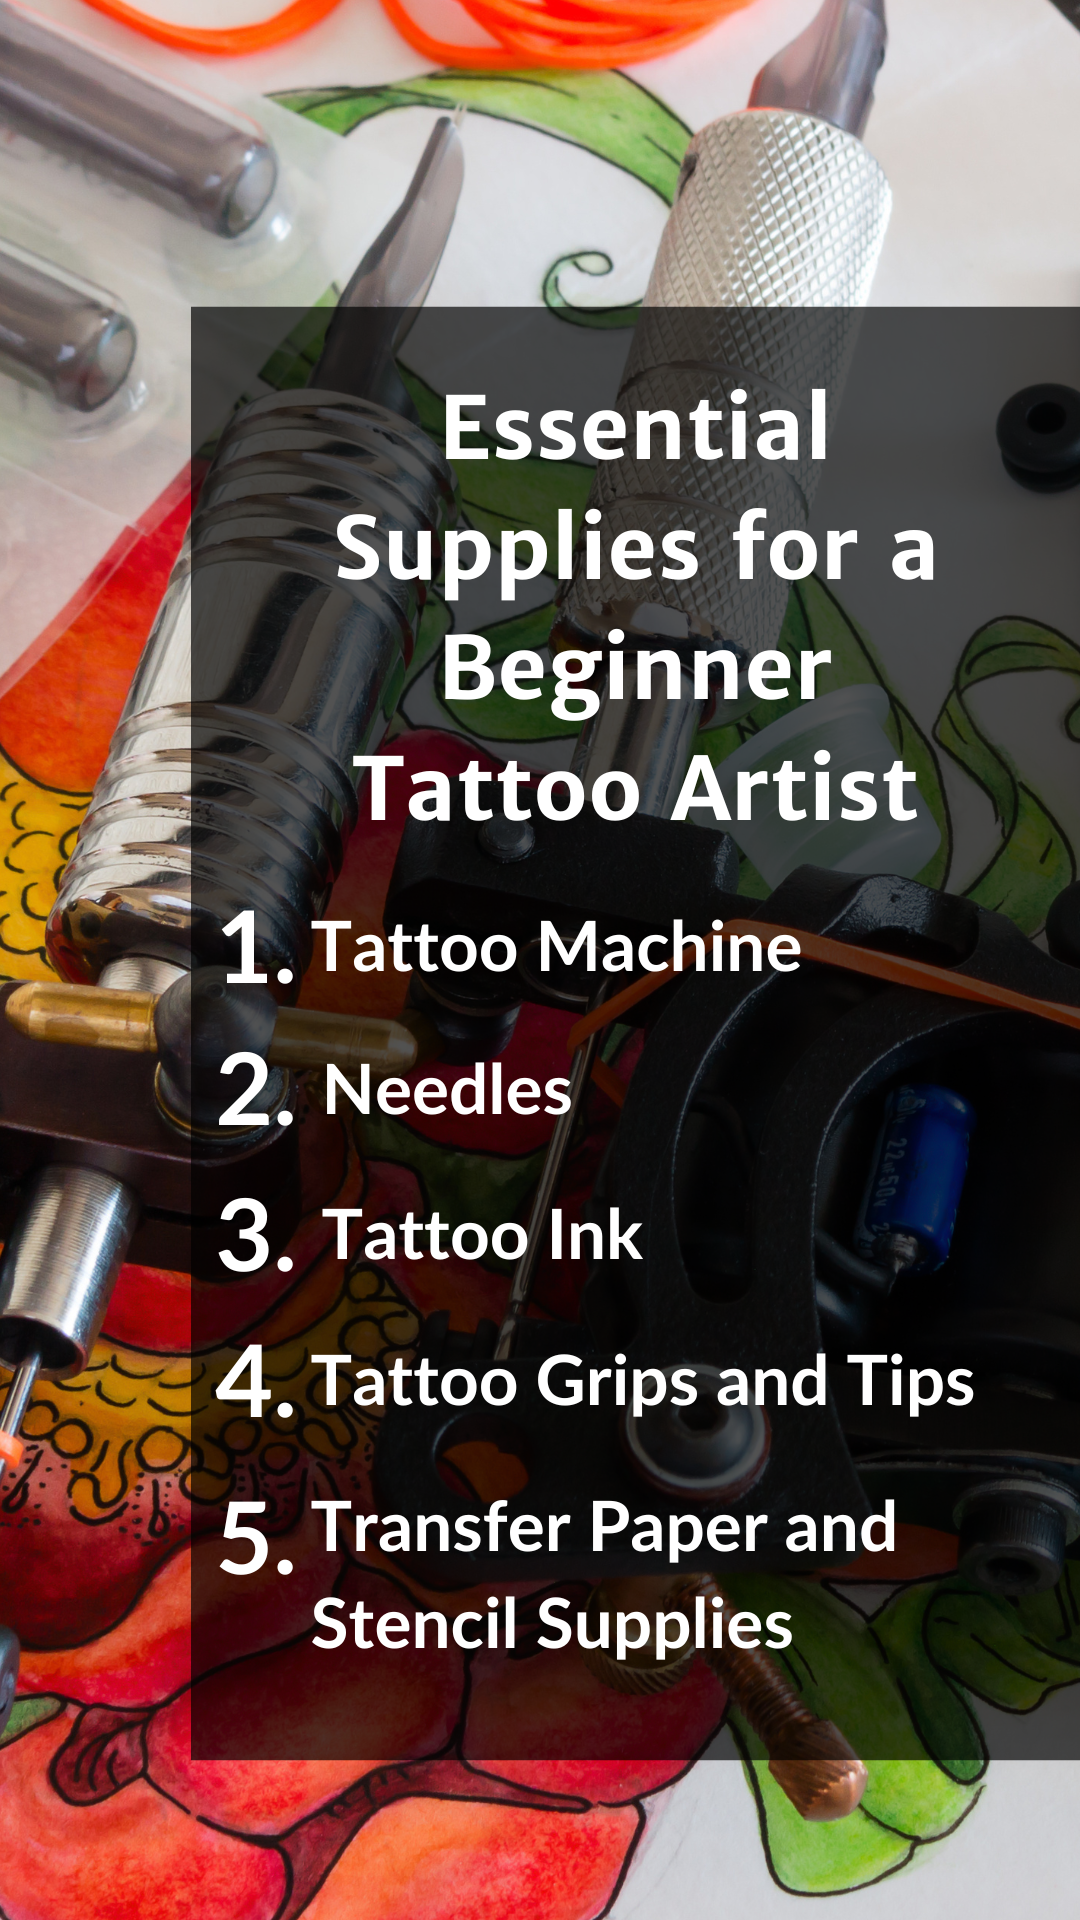 Essential Supplies for a Beginner Tattoo Artist